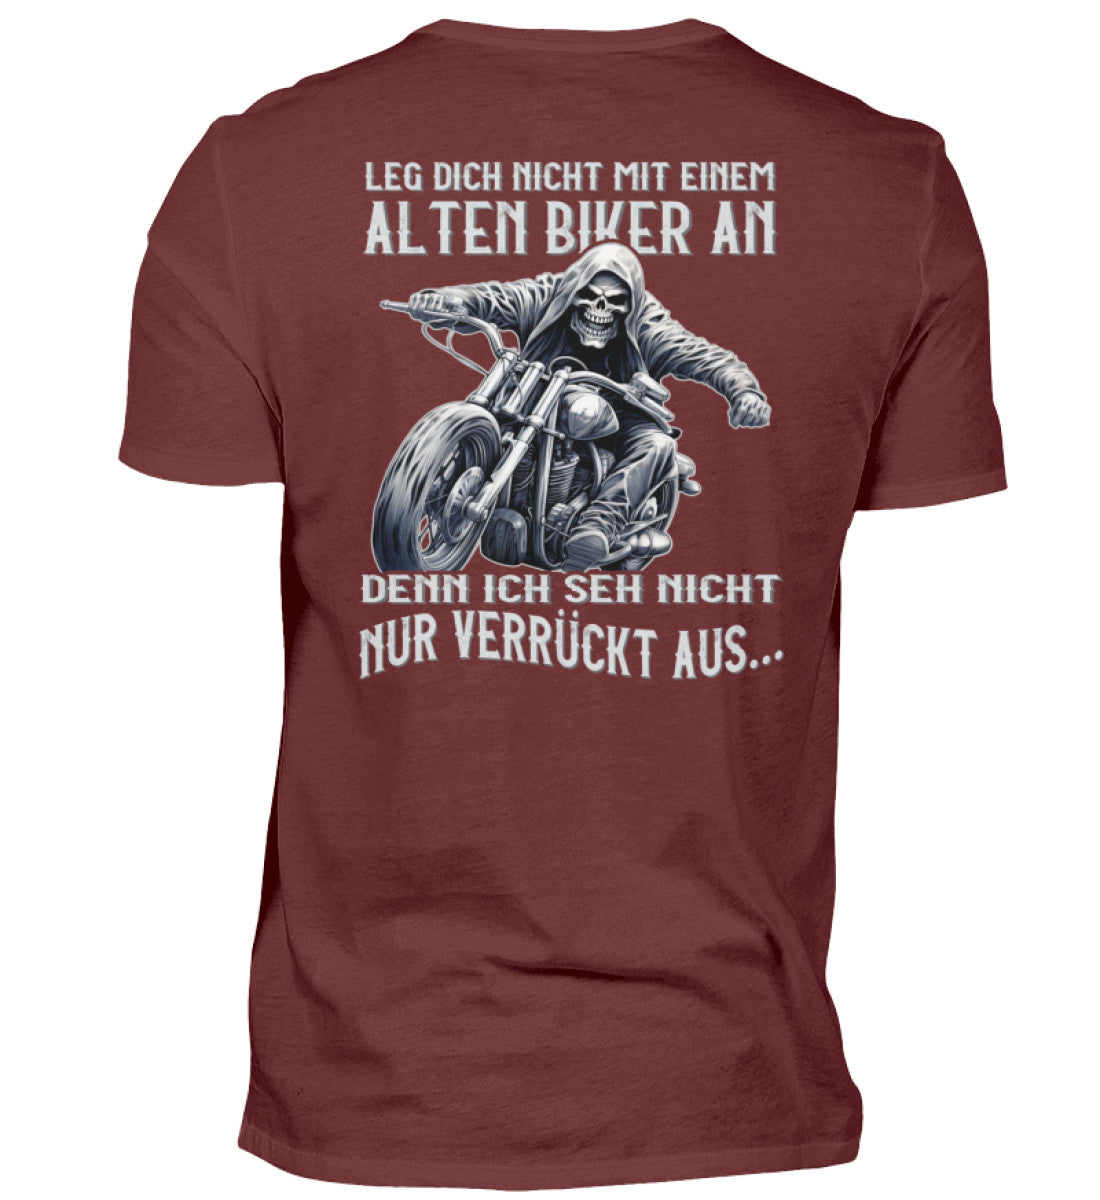 Ein Biker T-Shirt für Motorradfahrer von Wingbikers mit dem Aufdruck, Leg dich nicht mit einem alten Biker an, denn ich seh nicht nur verrückt aus, als Back Print - in weinrot.